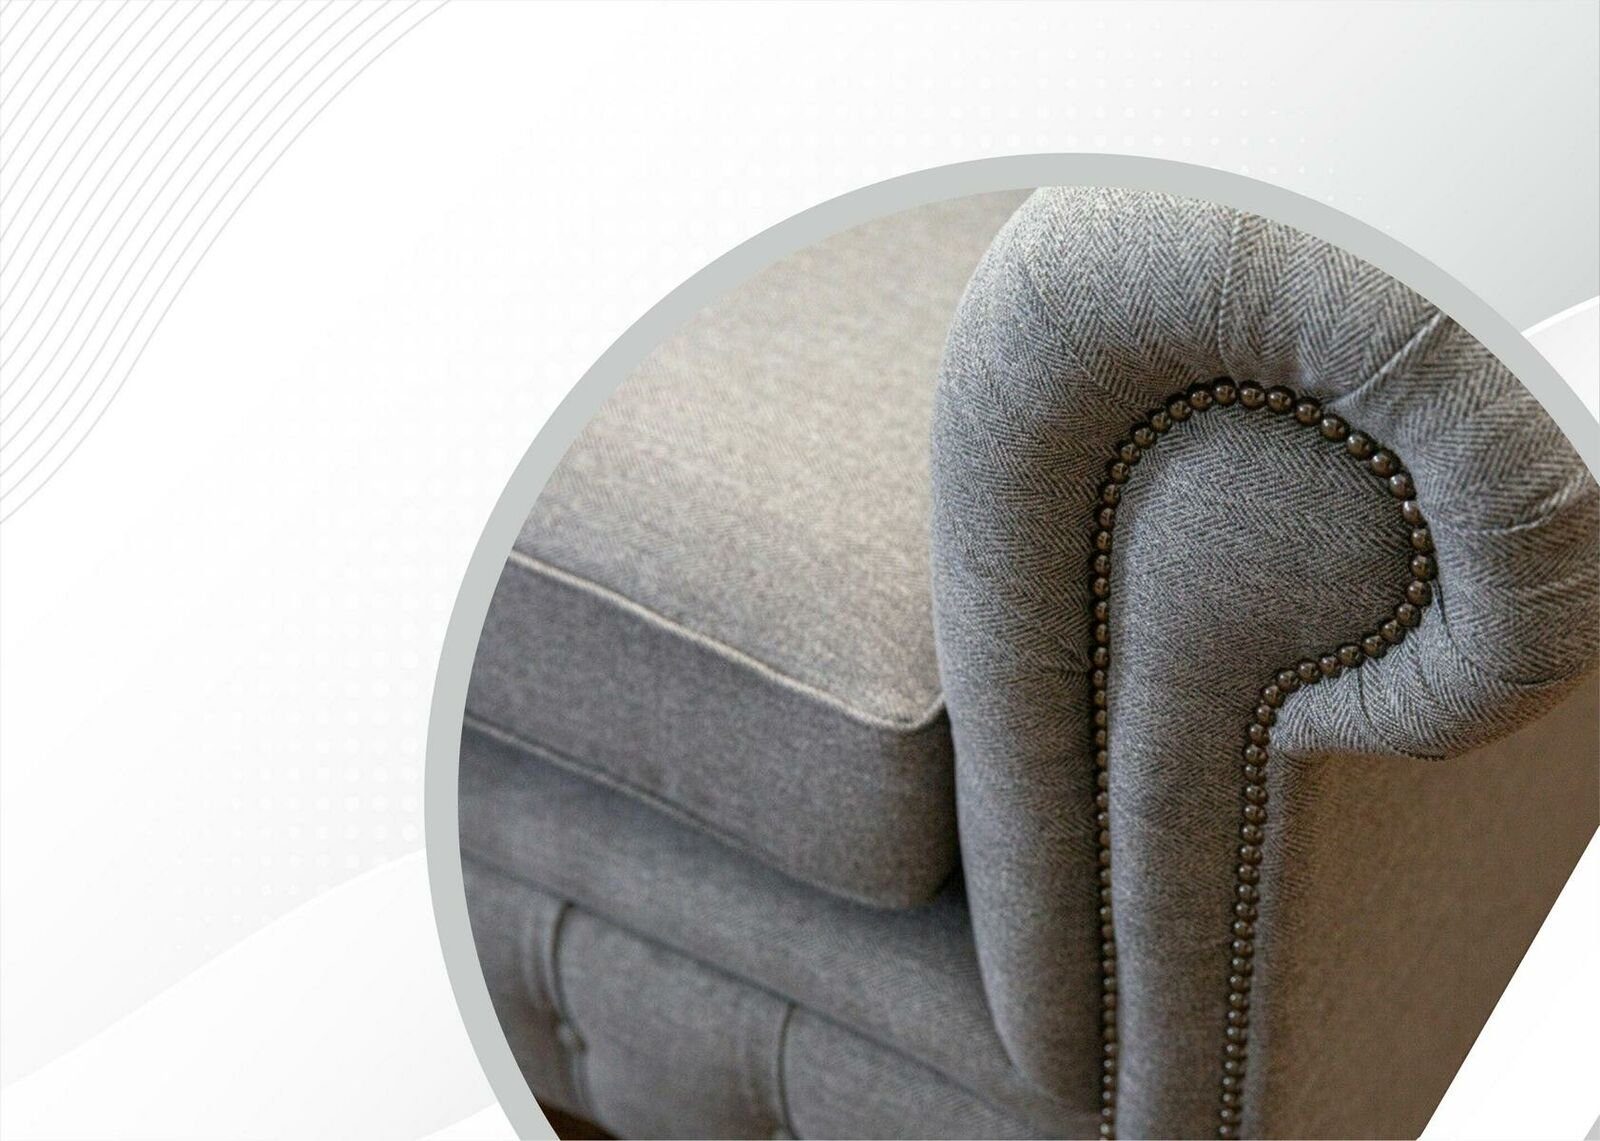 JVmoebel Chesterfield-Sofa, Chesterfield 2 Sitzer Hellgrau Textil Sofa Polster Wohnzimmer Stoff Design Sofas